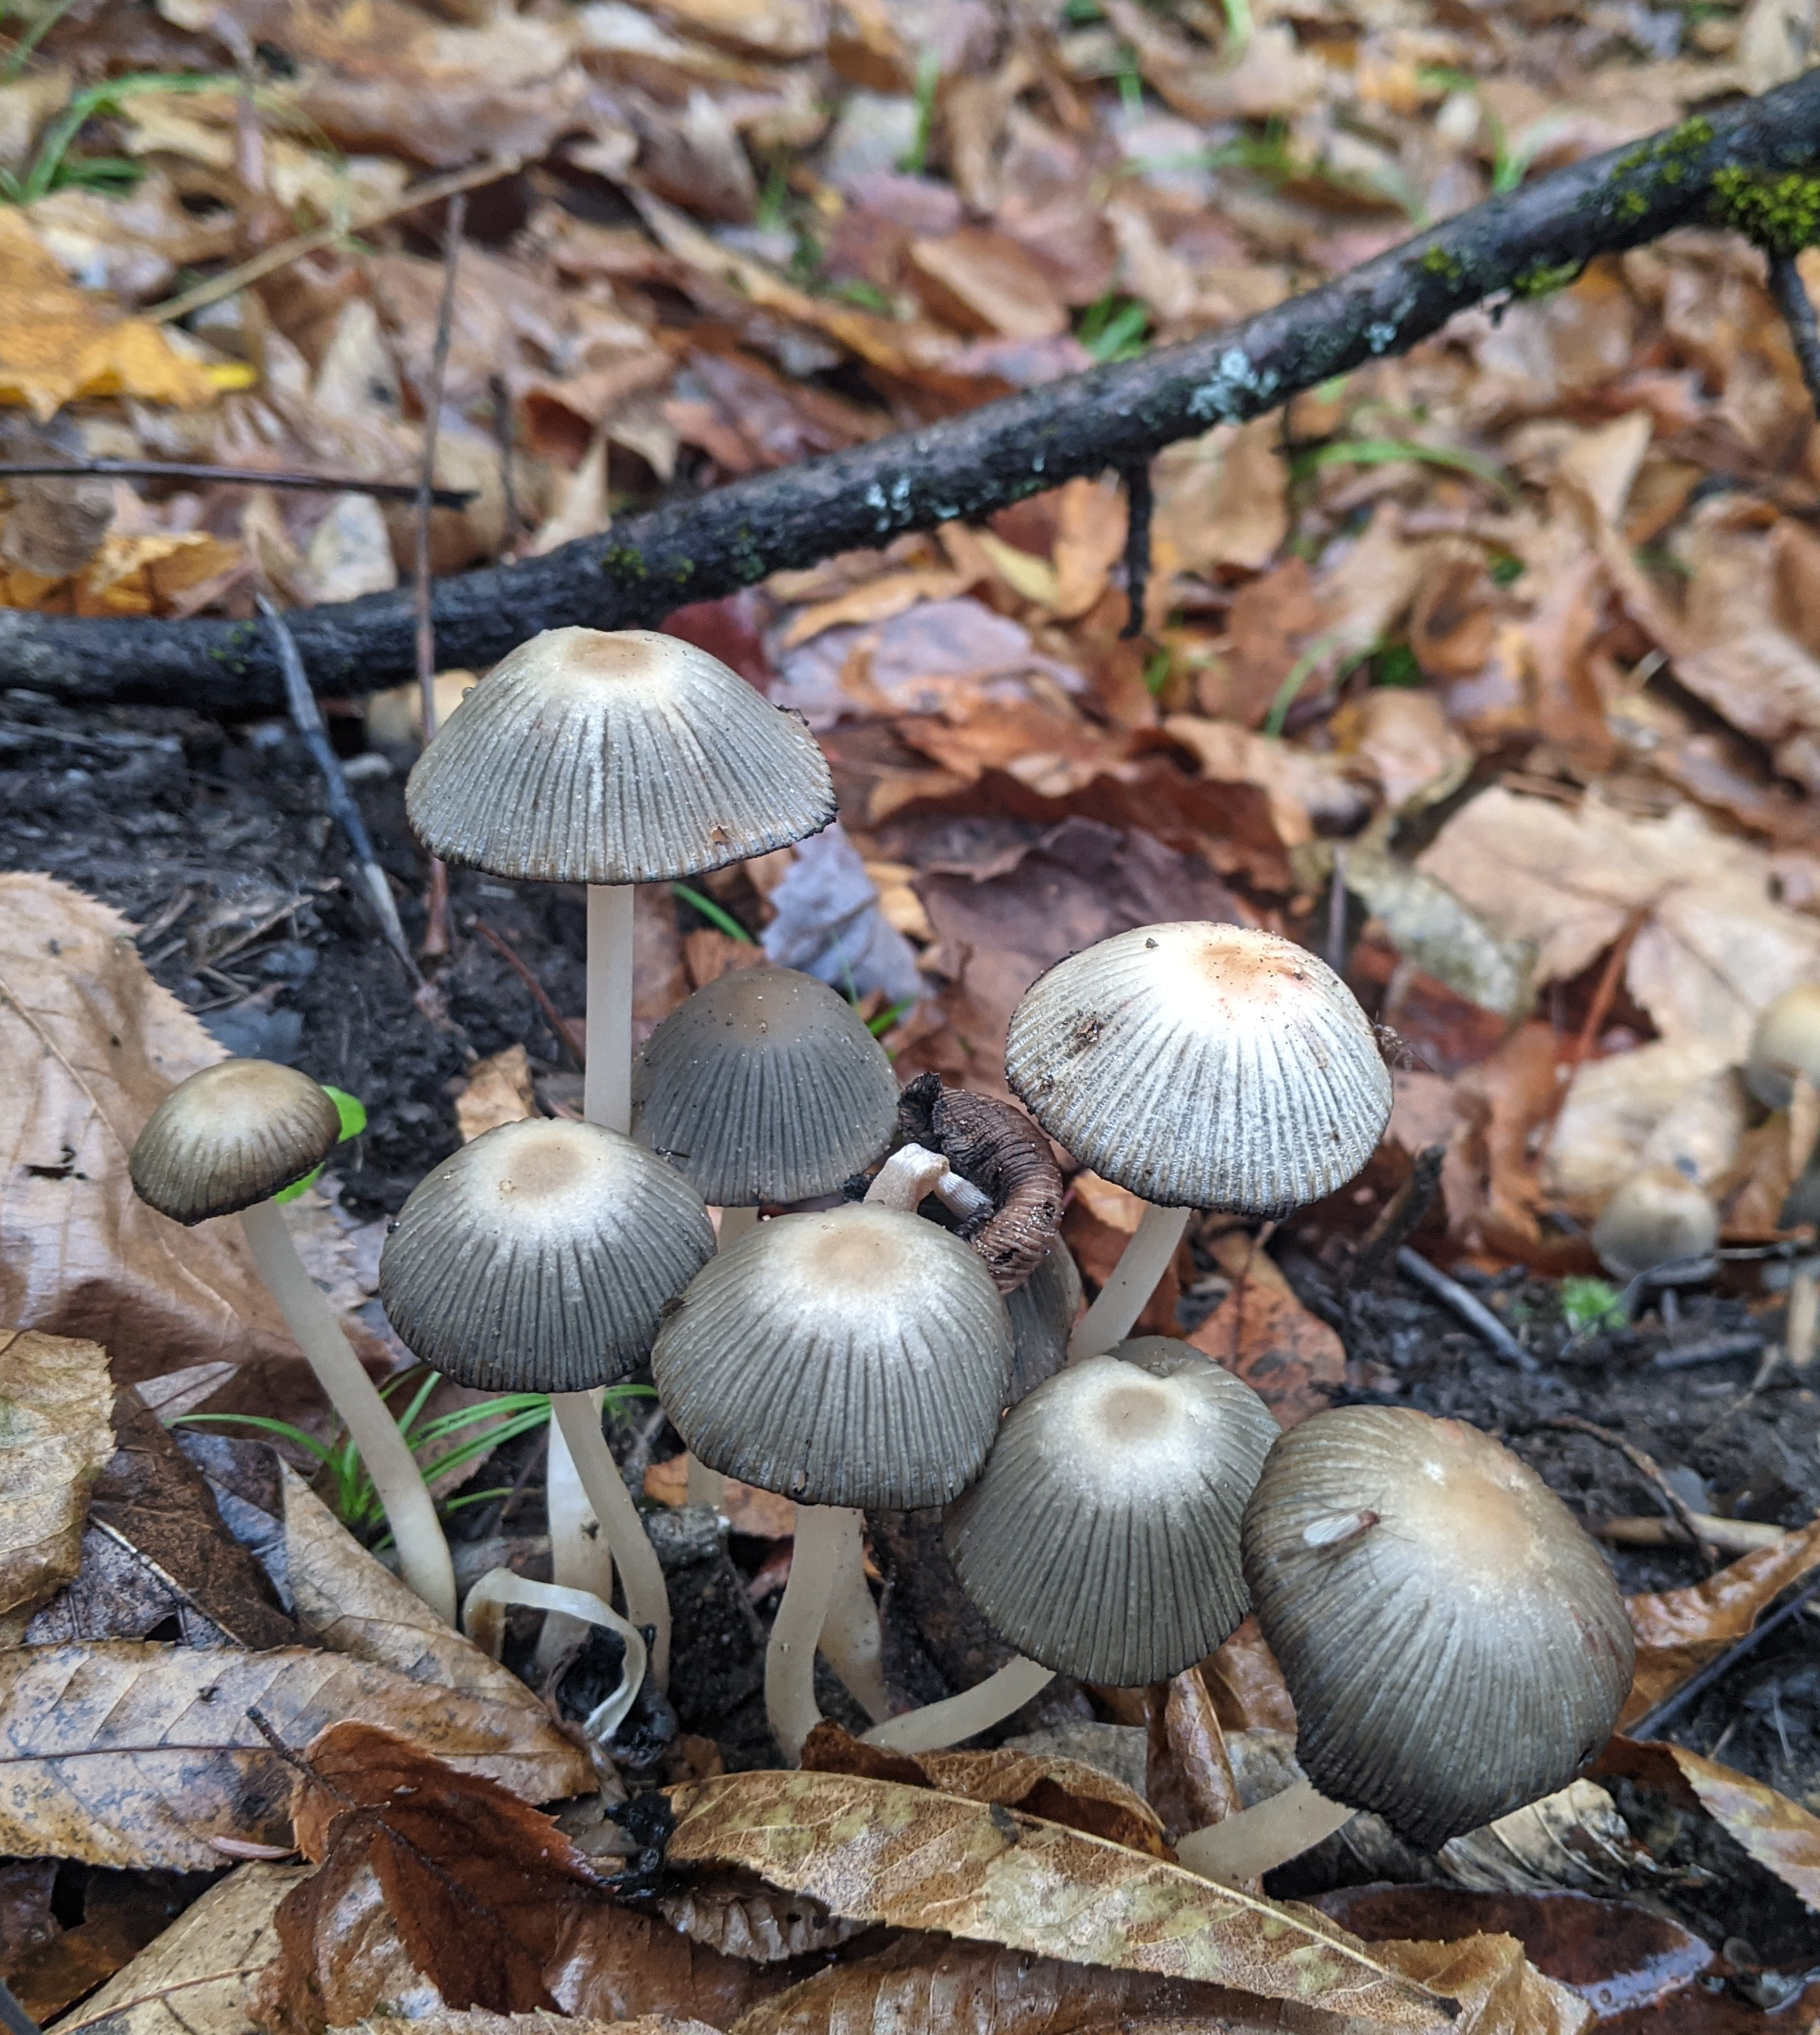 Some cute looking mushrooms.